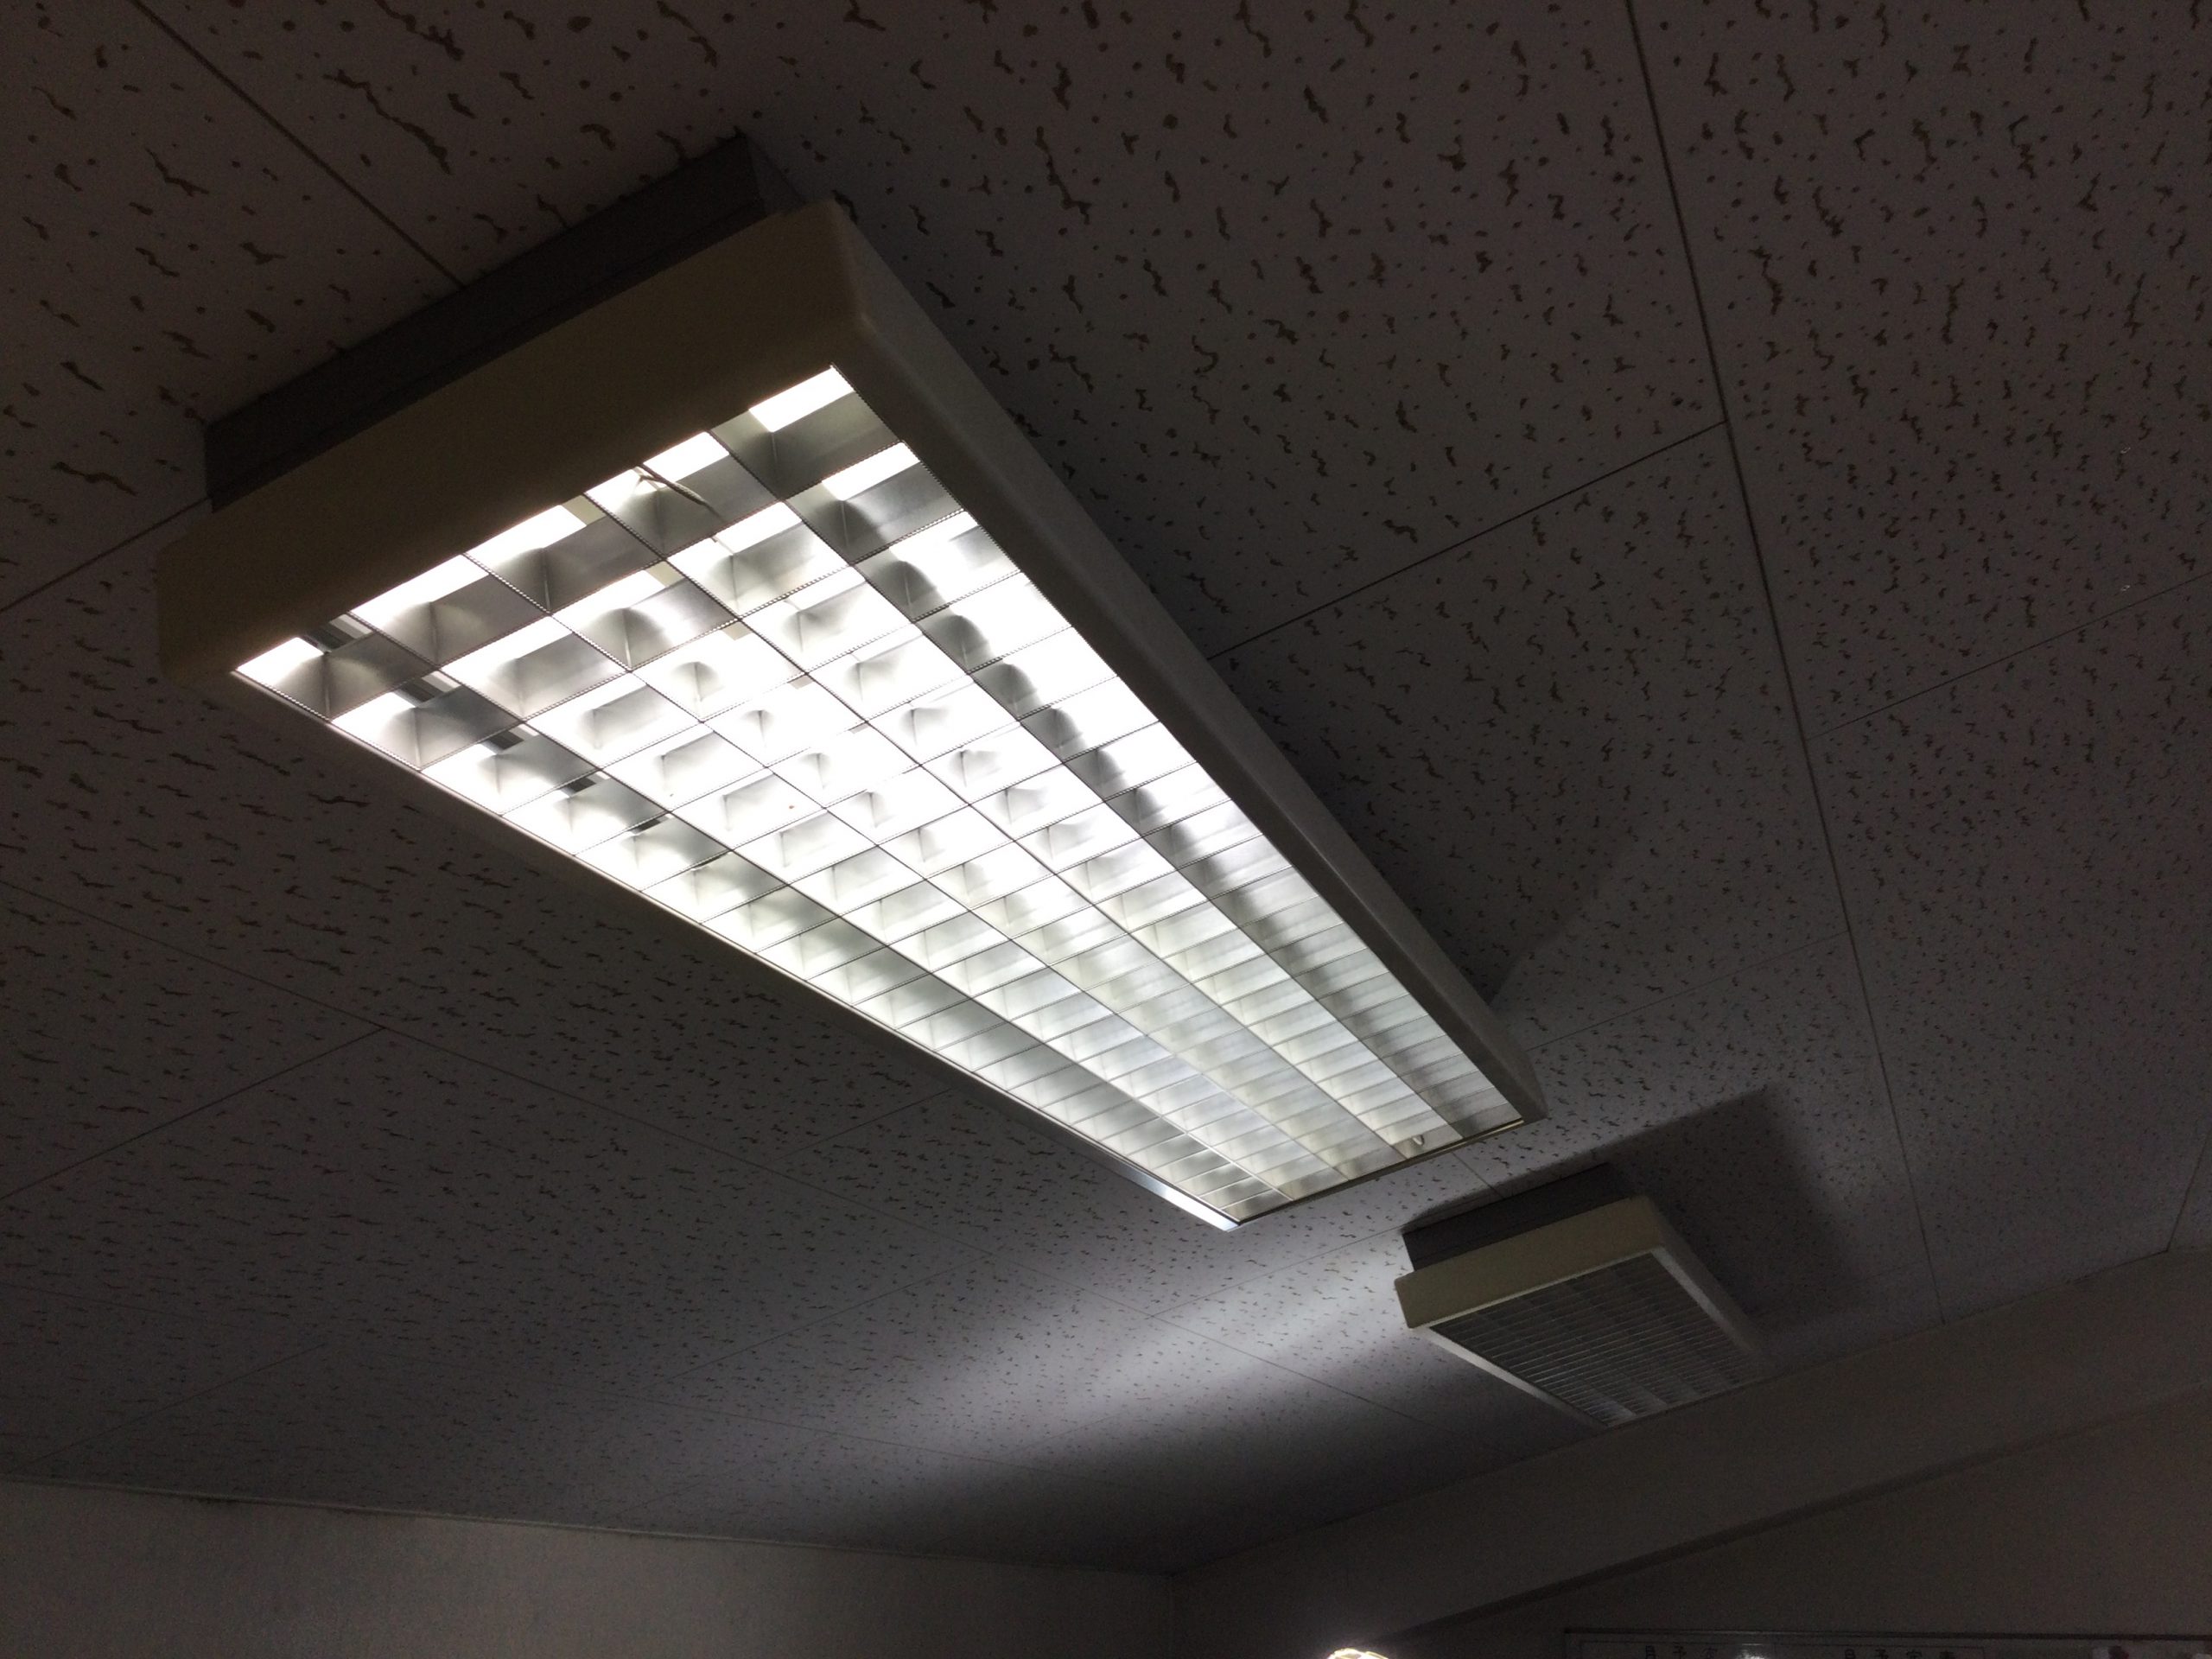 オフィス・事務所照明 – ページ 2 – てるくにでんきの毎日は照明器具の毎日